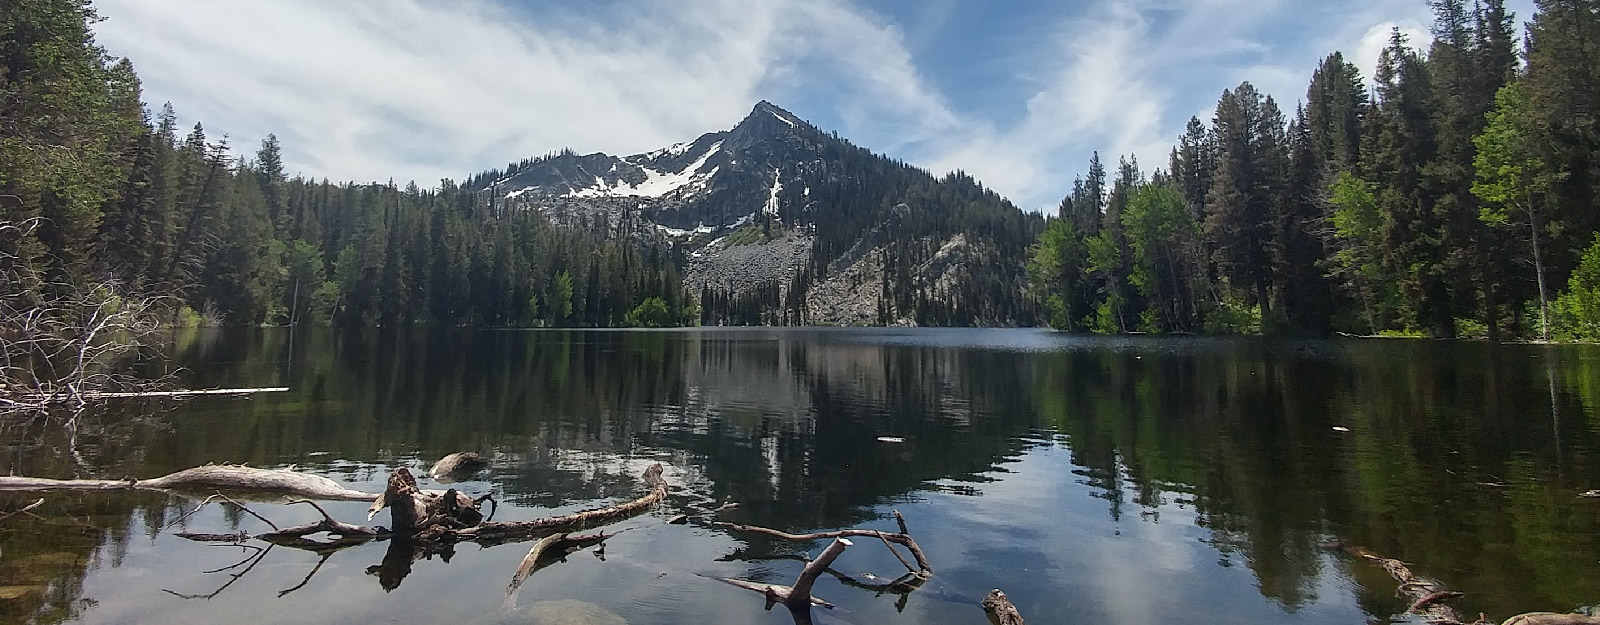 Lago rodeado de bosque y montañas